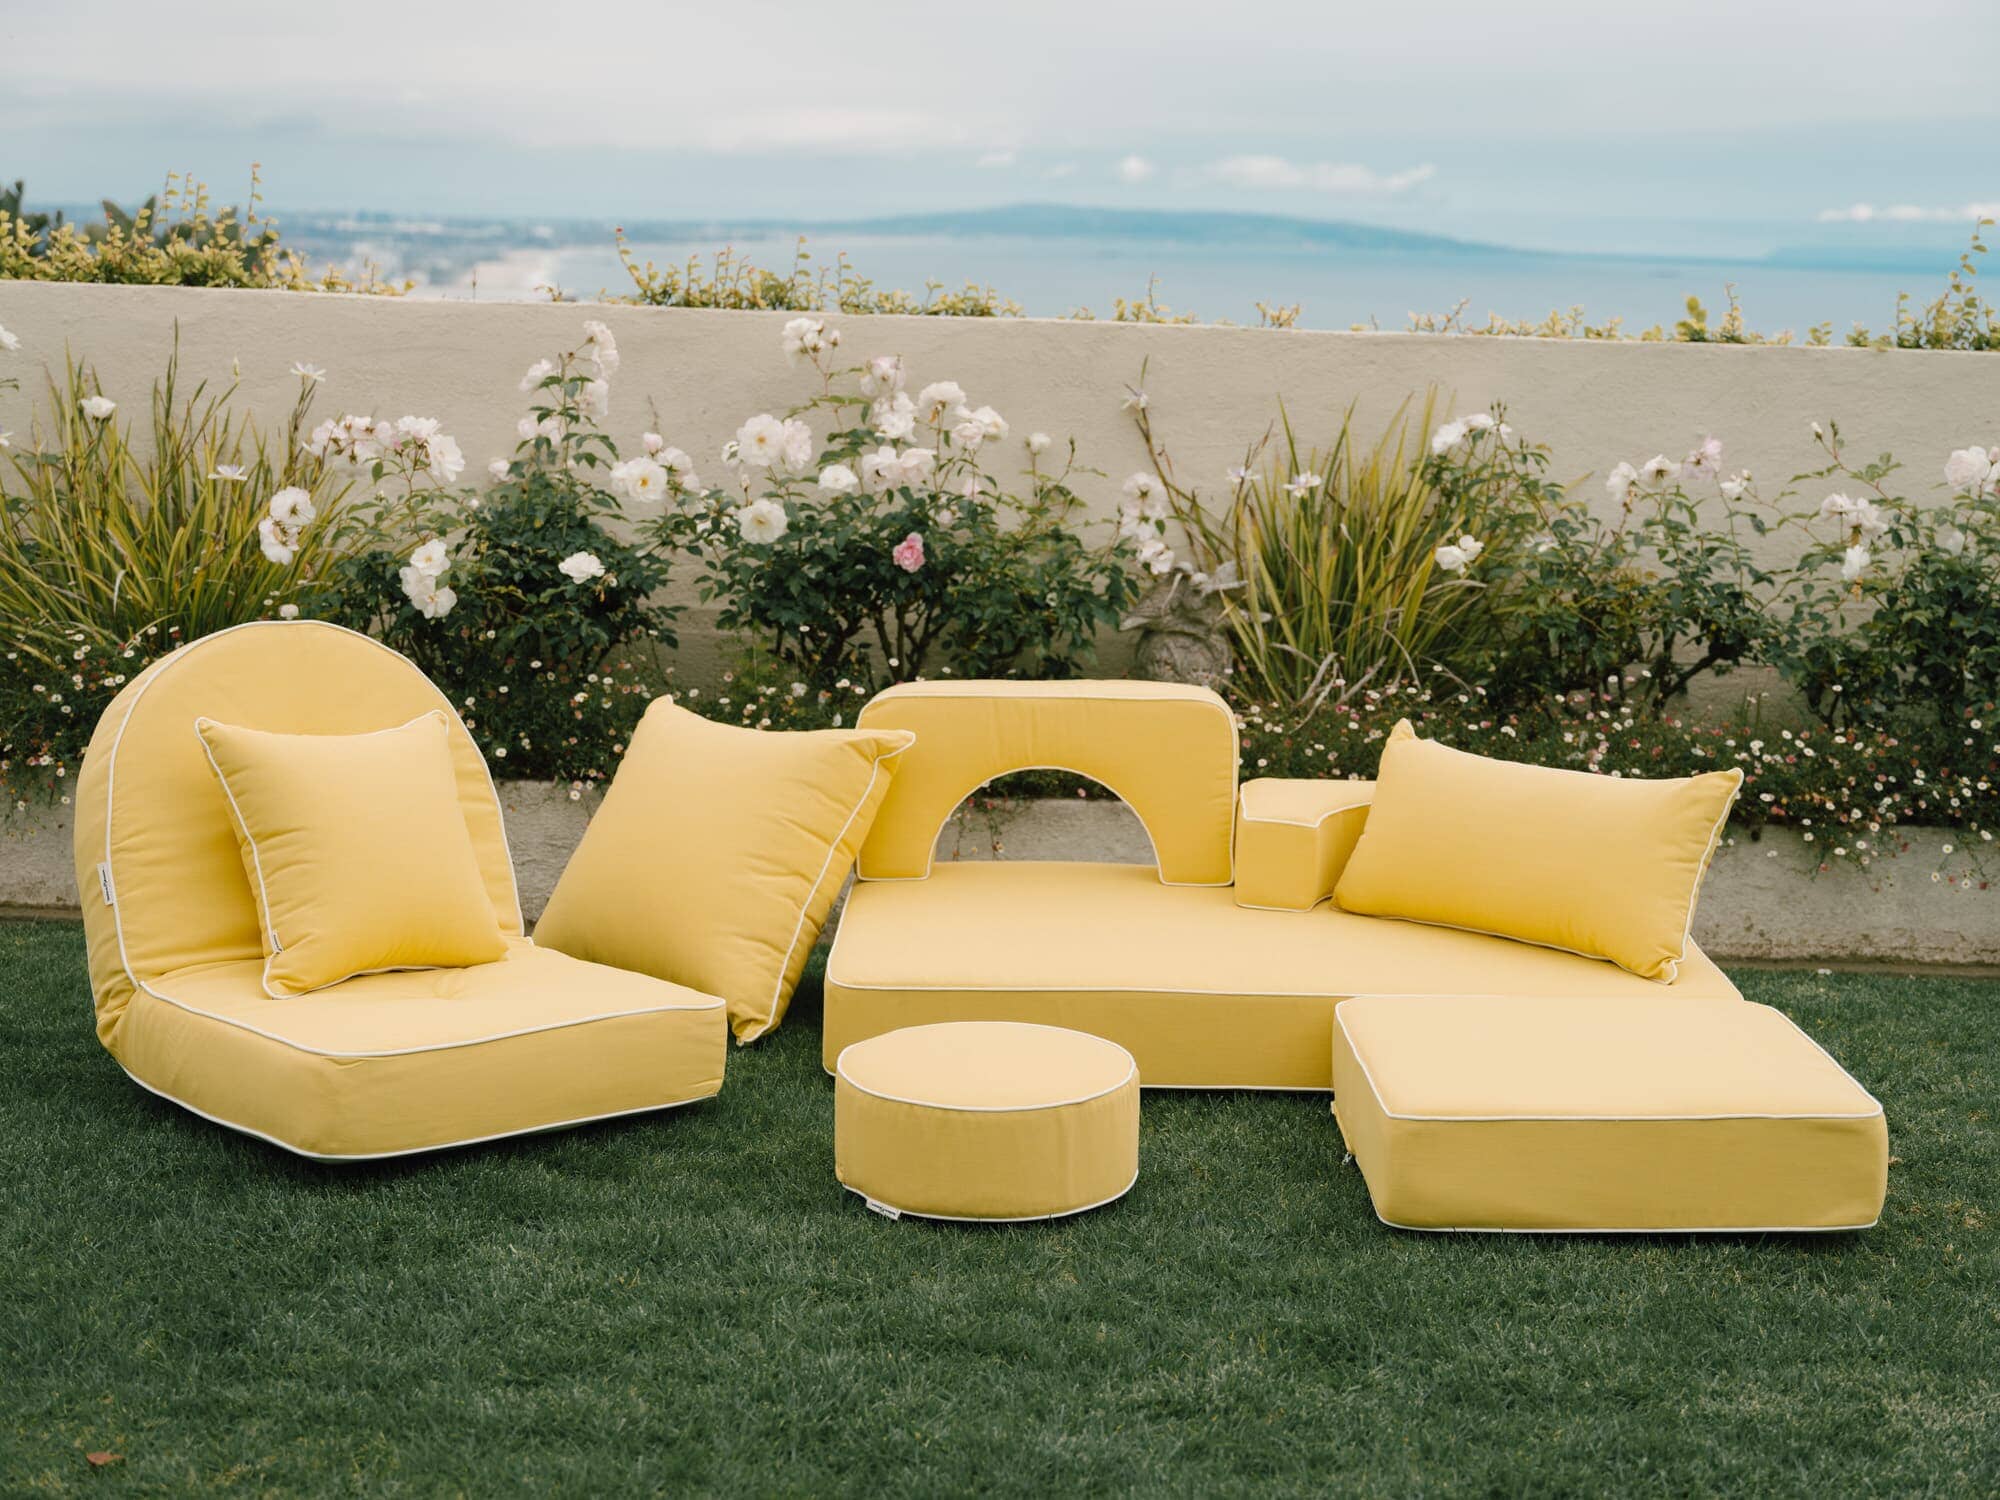 Riviera mimosa outdoor pillows in a garden setting